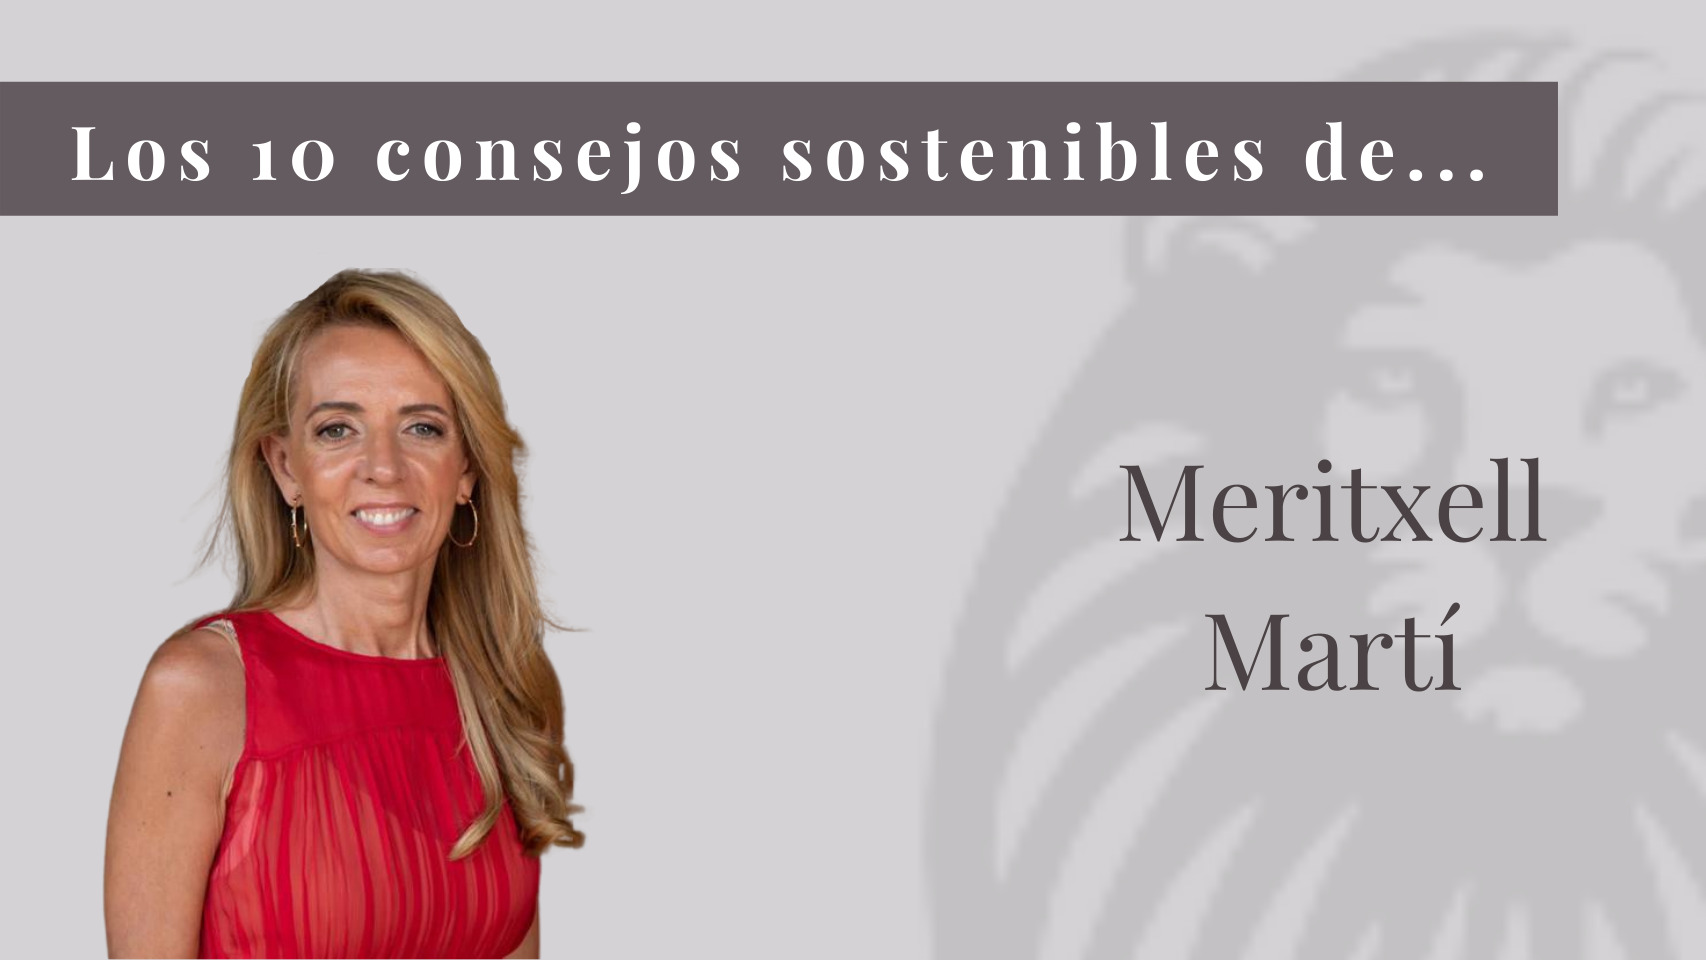 Los 10 consejos sostenibles de Meritxell Martí